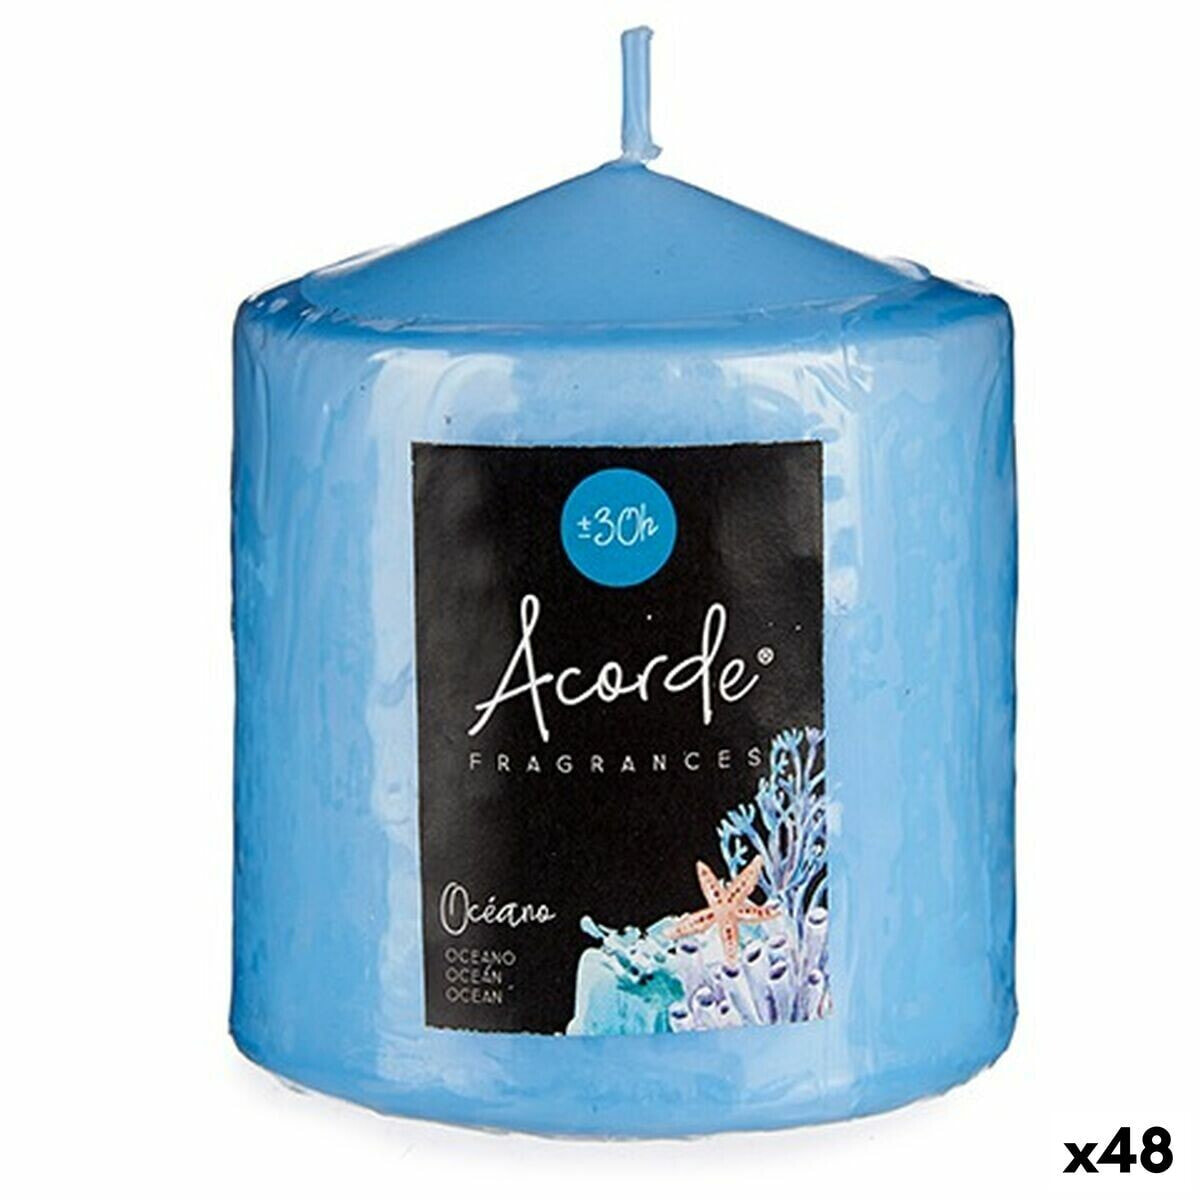 Ароматизированная свеча Океан Синий 7 x 8 x 7 cm (48 штук)